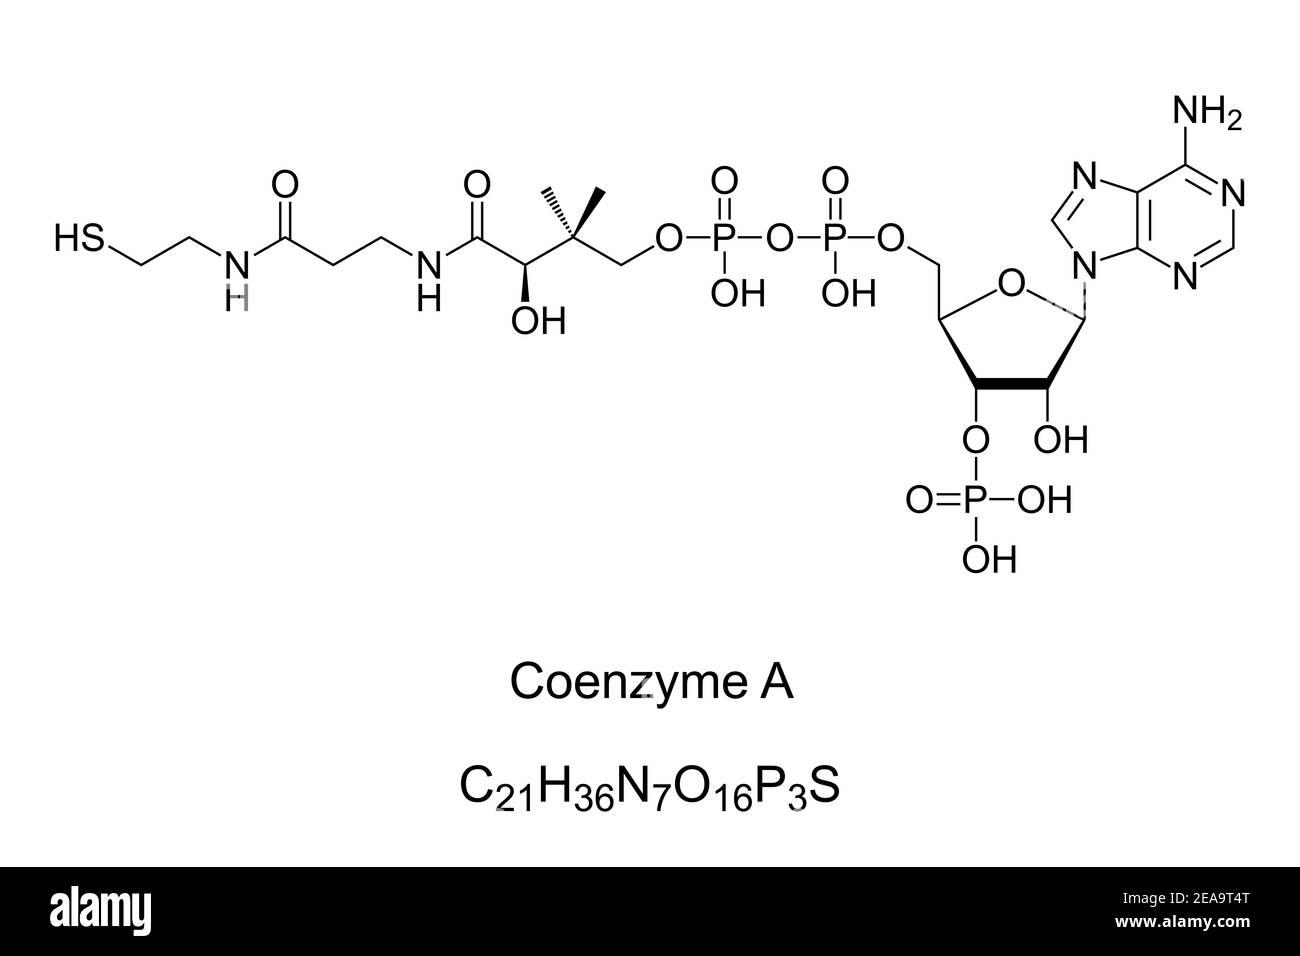 Coenzyme A, formule chimique et structure squelettique. Coenzyme, notable pour son rôle dans la synthèse et l'oxydation des acides gras. Banque D'Images